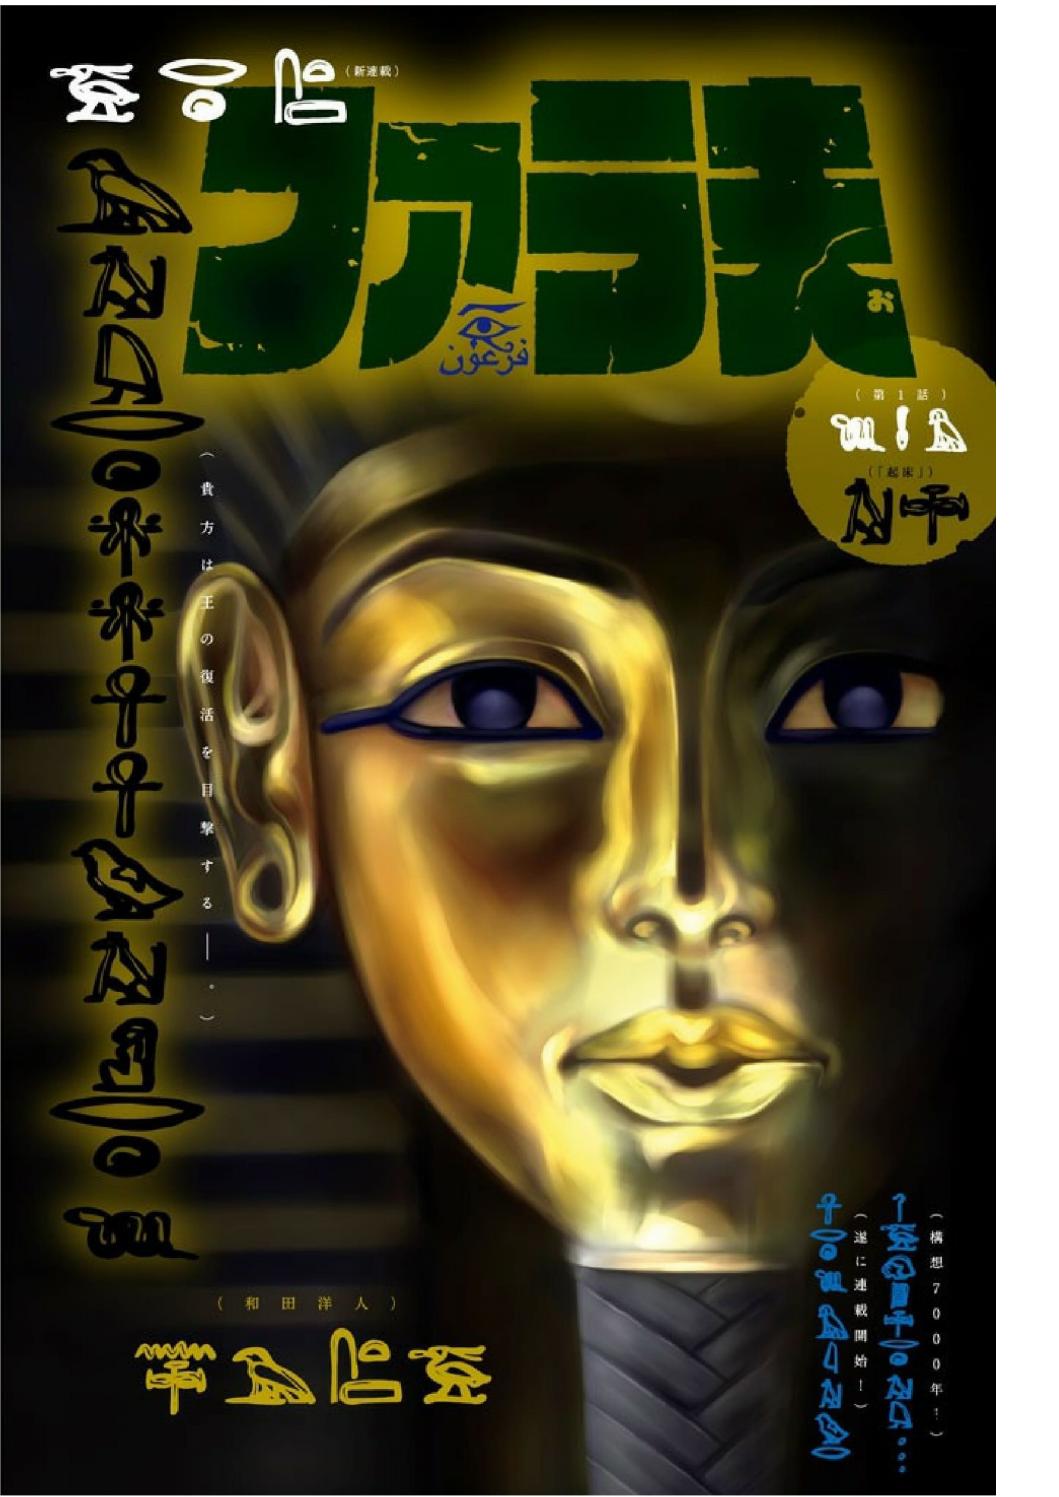 Pharaoh Vol. 1 Ch. 2 An Announcement